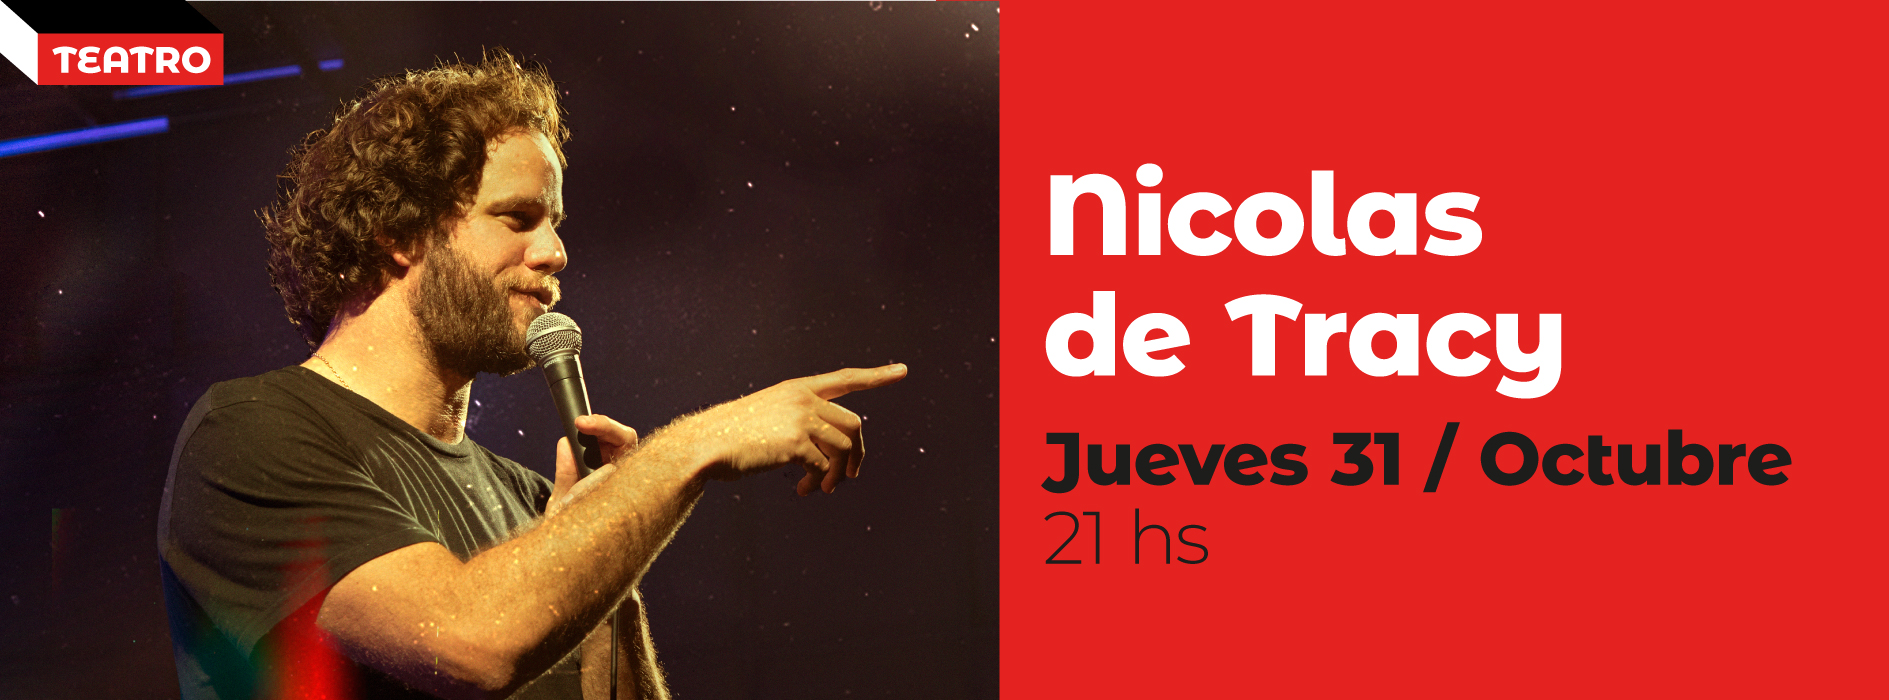 NICOLAS DE TRACY